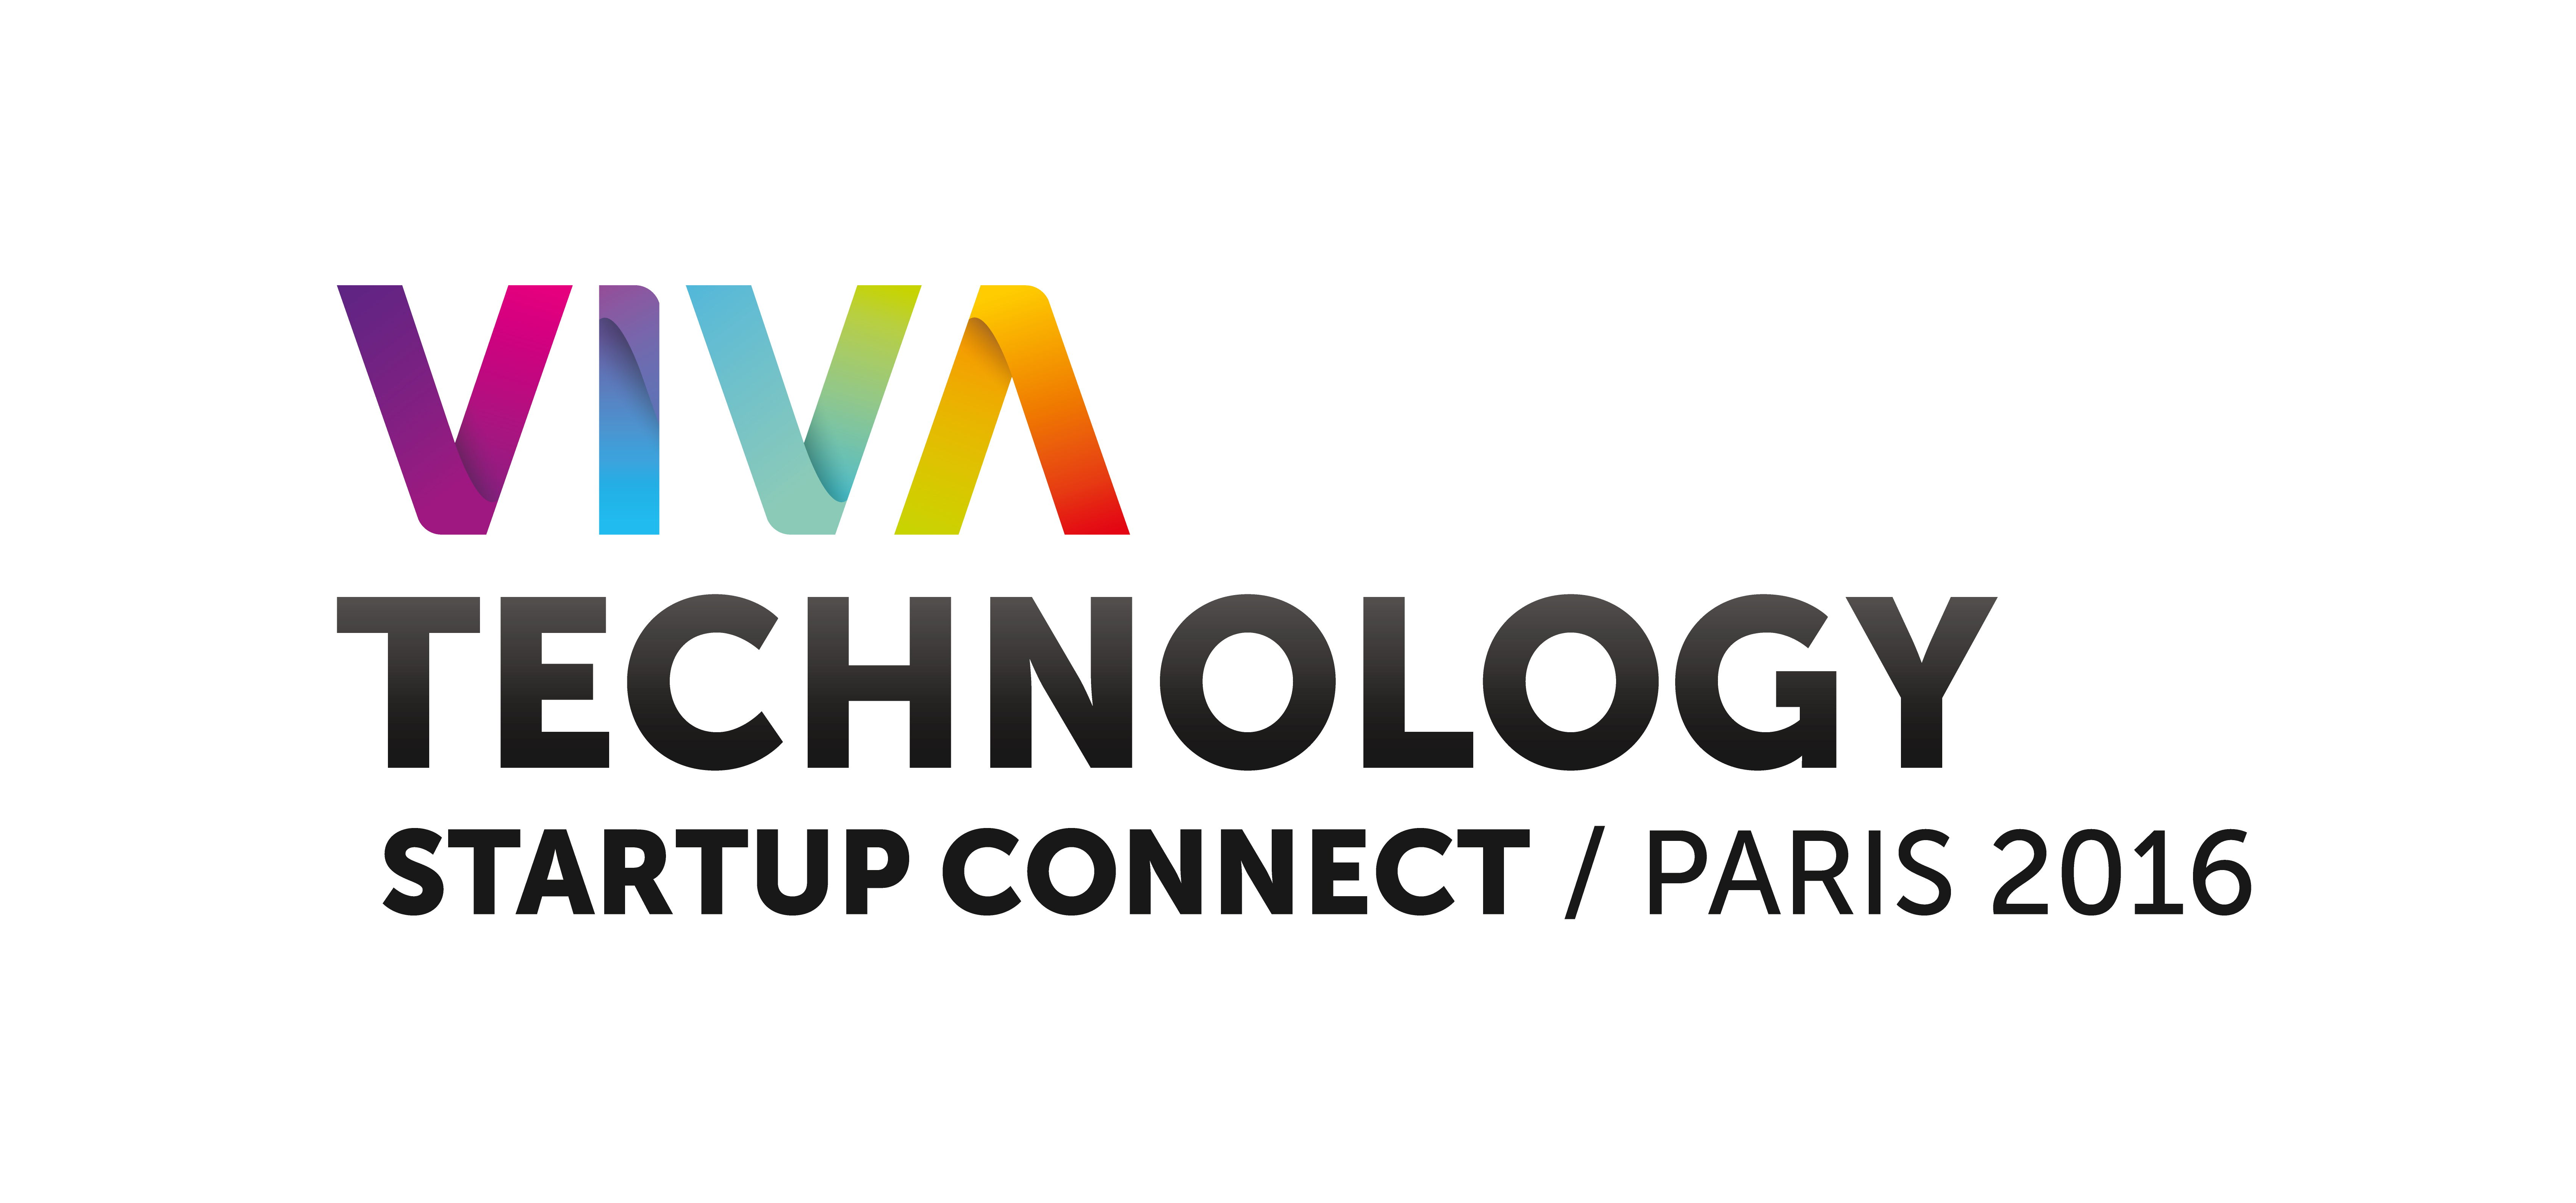 CONCOURS Gagnez votre place pour Viva Technology, nouvel évènement